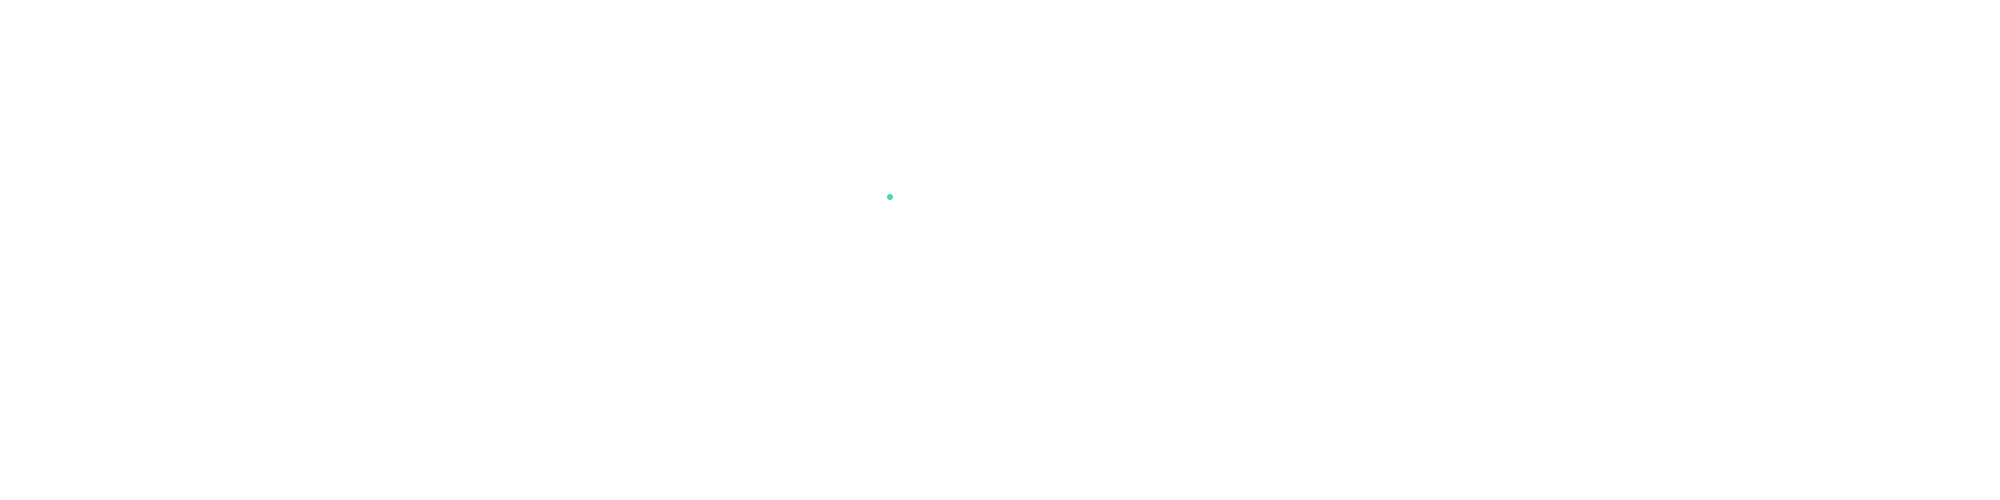 _bnr_business